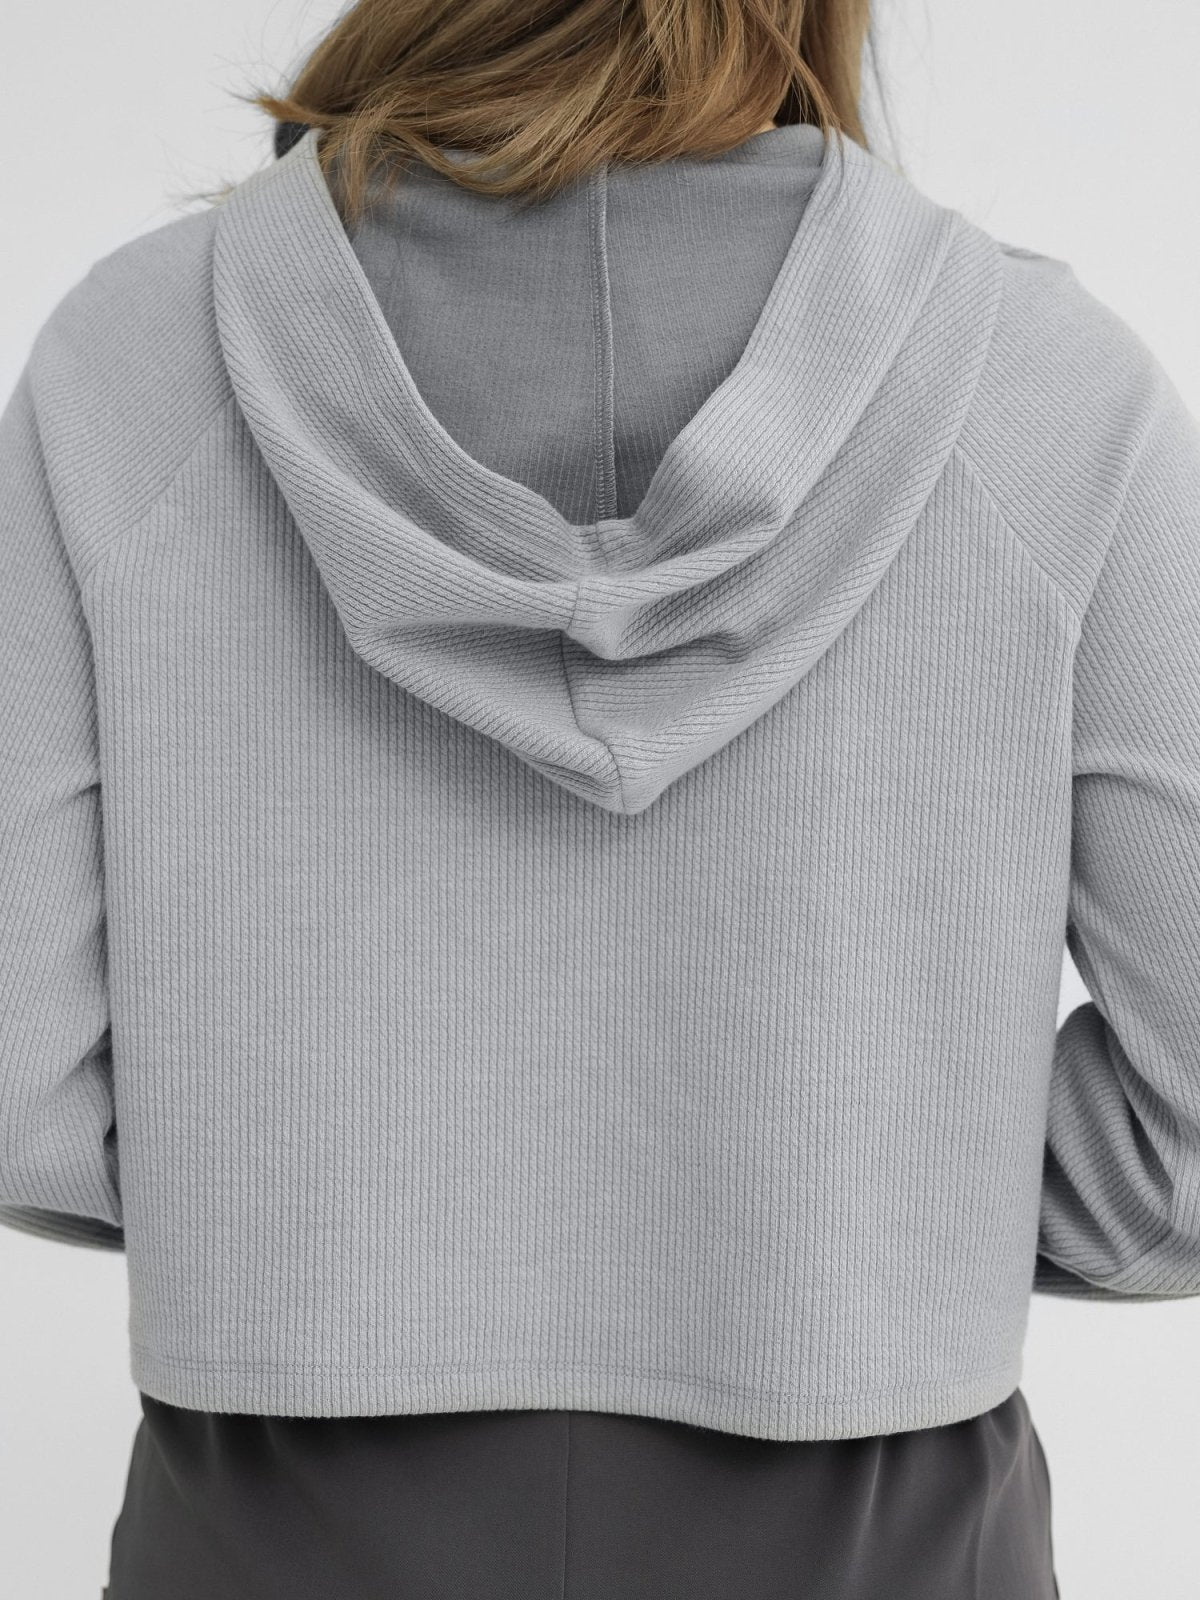 Niya Cropped Knit Hoodie - DAG-DD1295-23StoneBlueS - Stone Blue - S - D'zage Designs